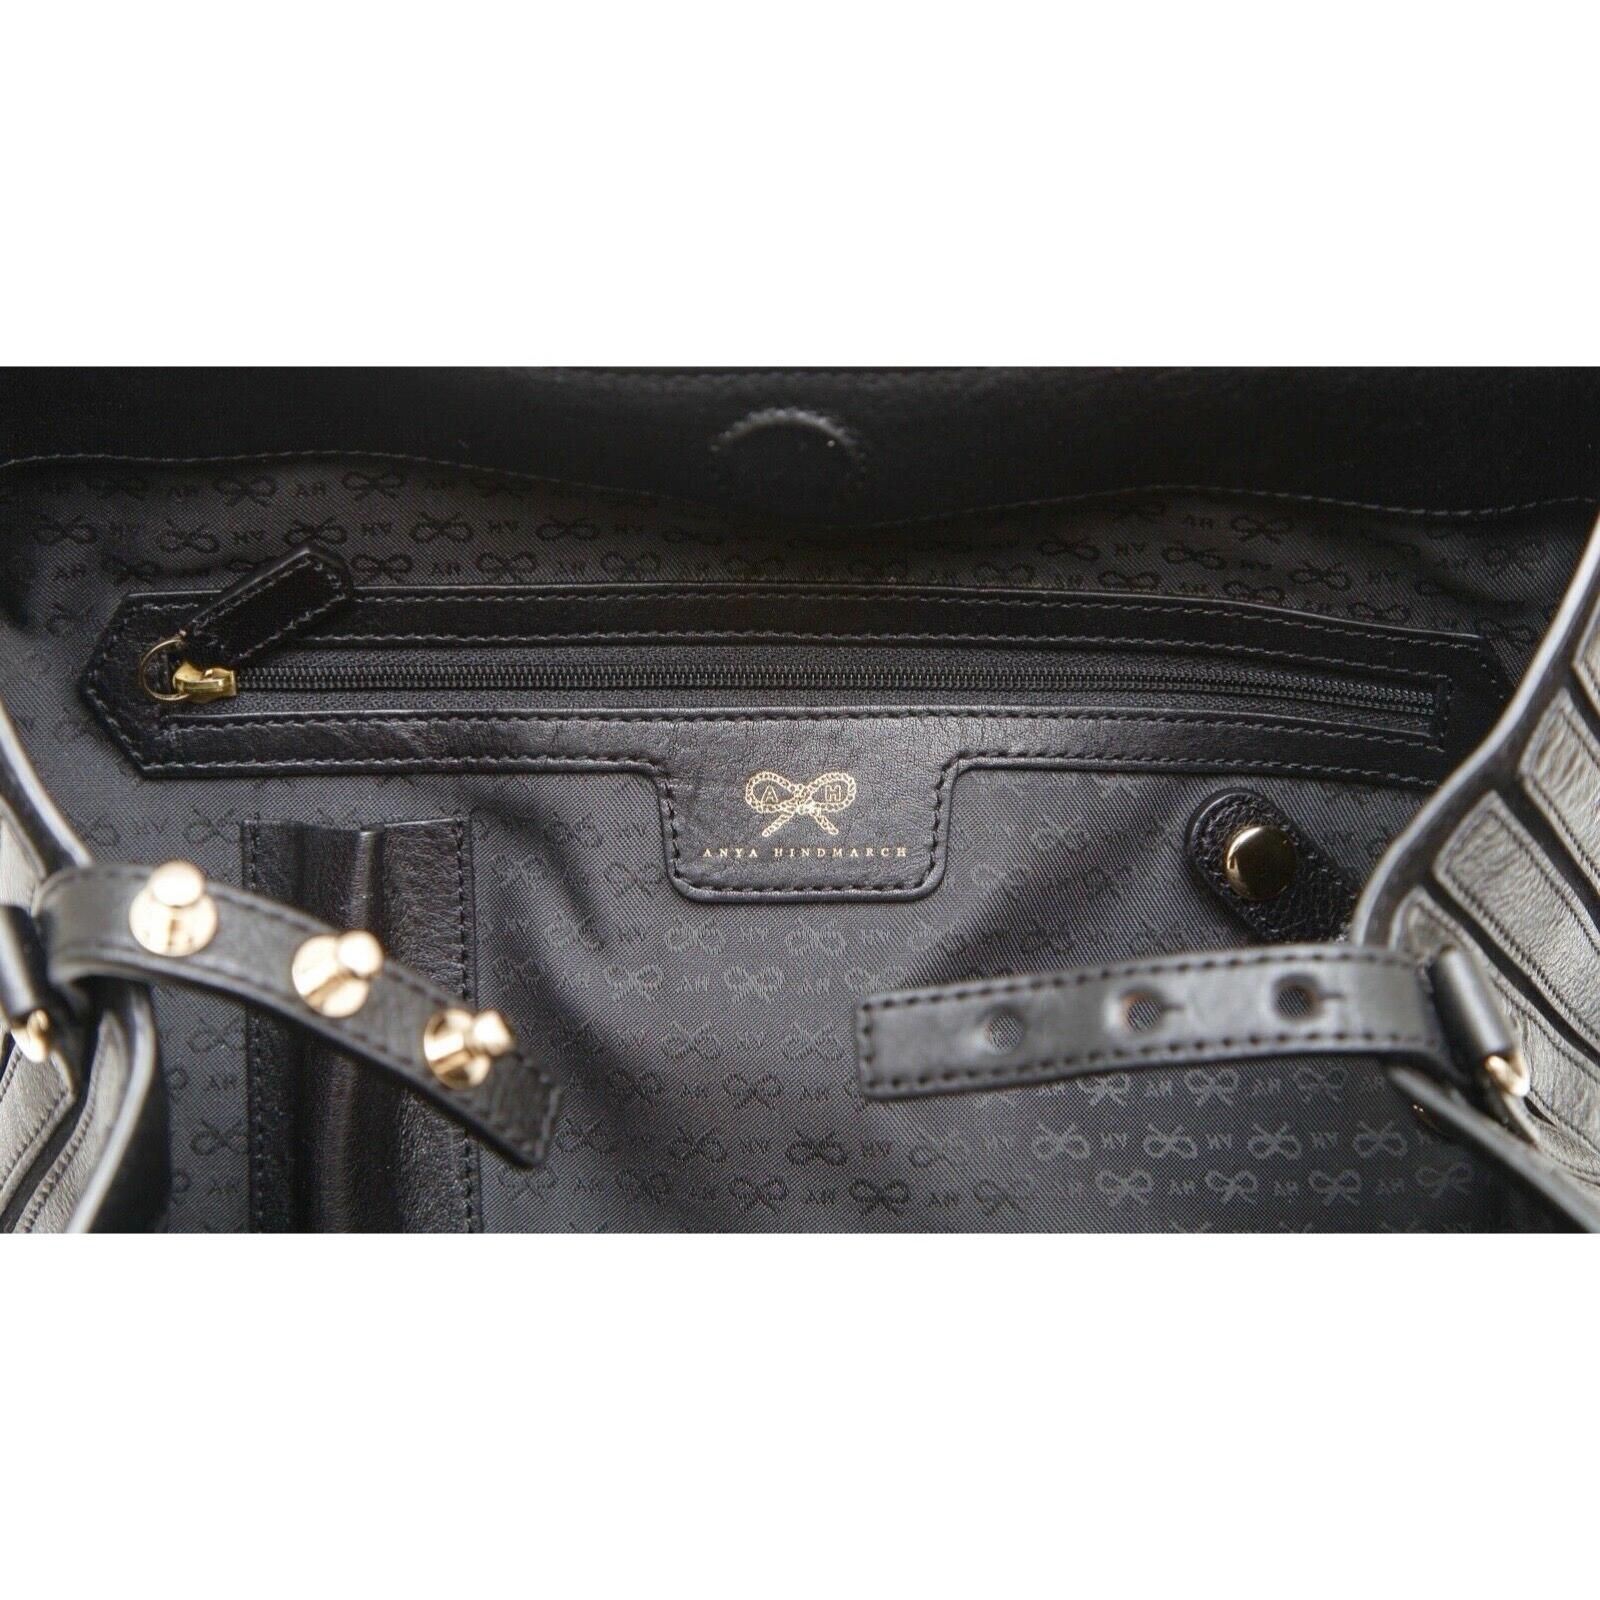 ANYA HINDMARCH Shoulder Bag Black Leather Suede BELVEDERE Hobo Gold Canvas Strap For Sale 4